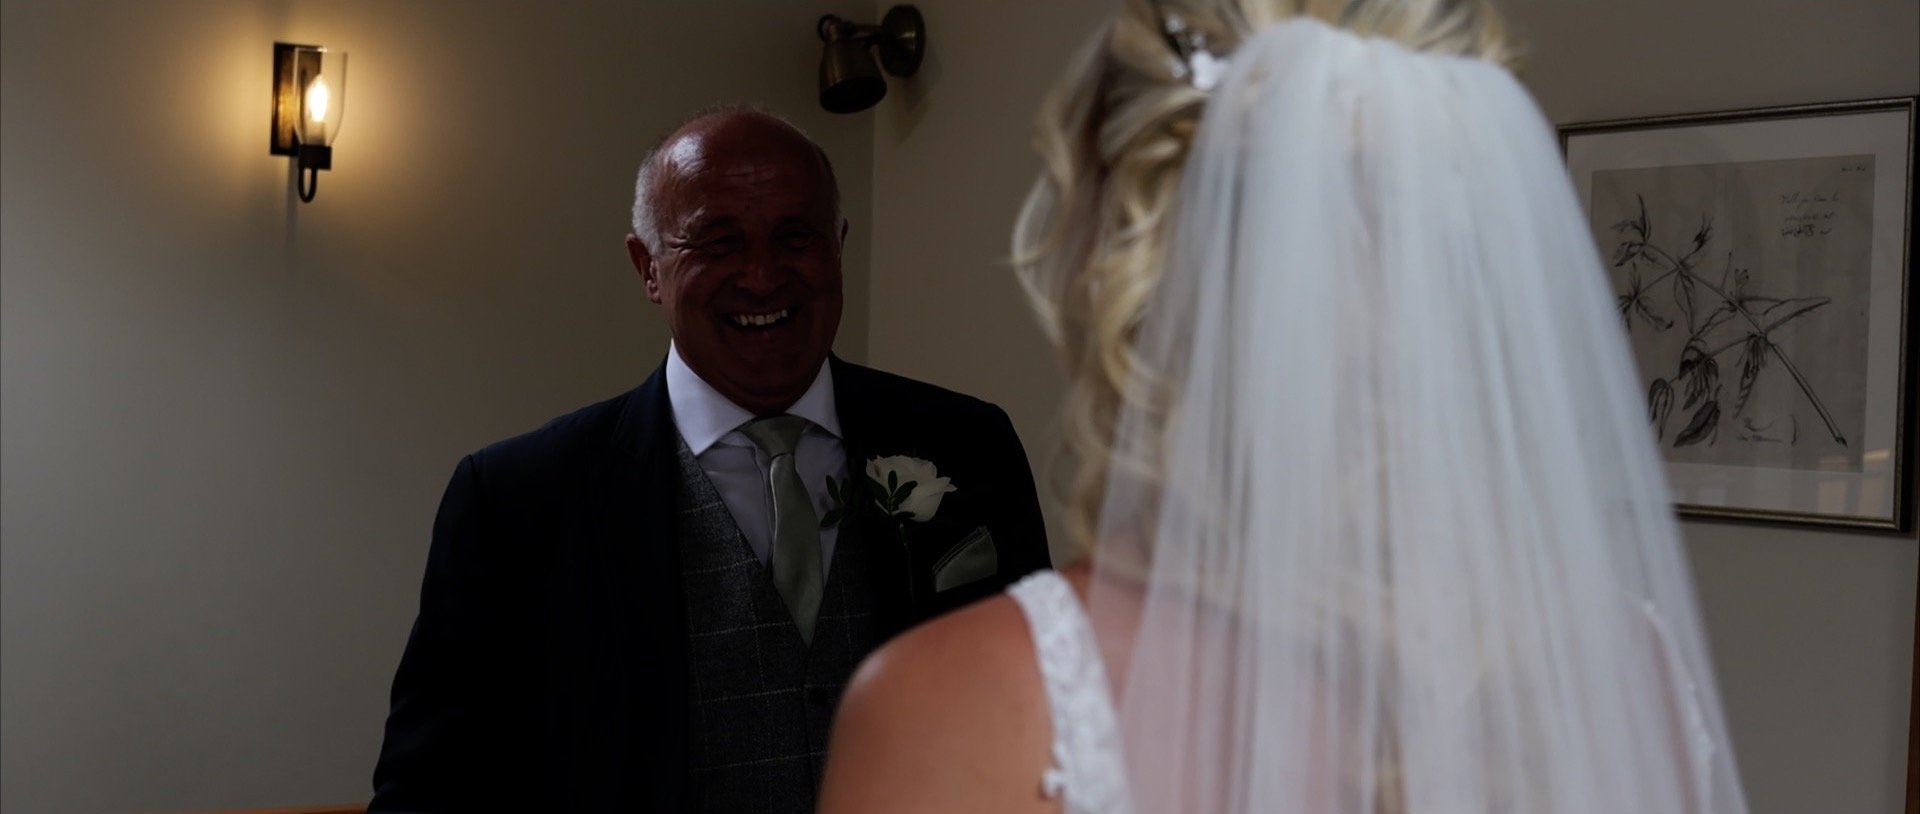 3 Cheers Media - Apton Hall Wedding Video - Happy Dad meets Bride.jpg